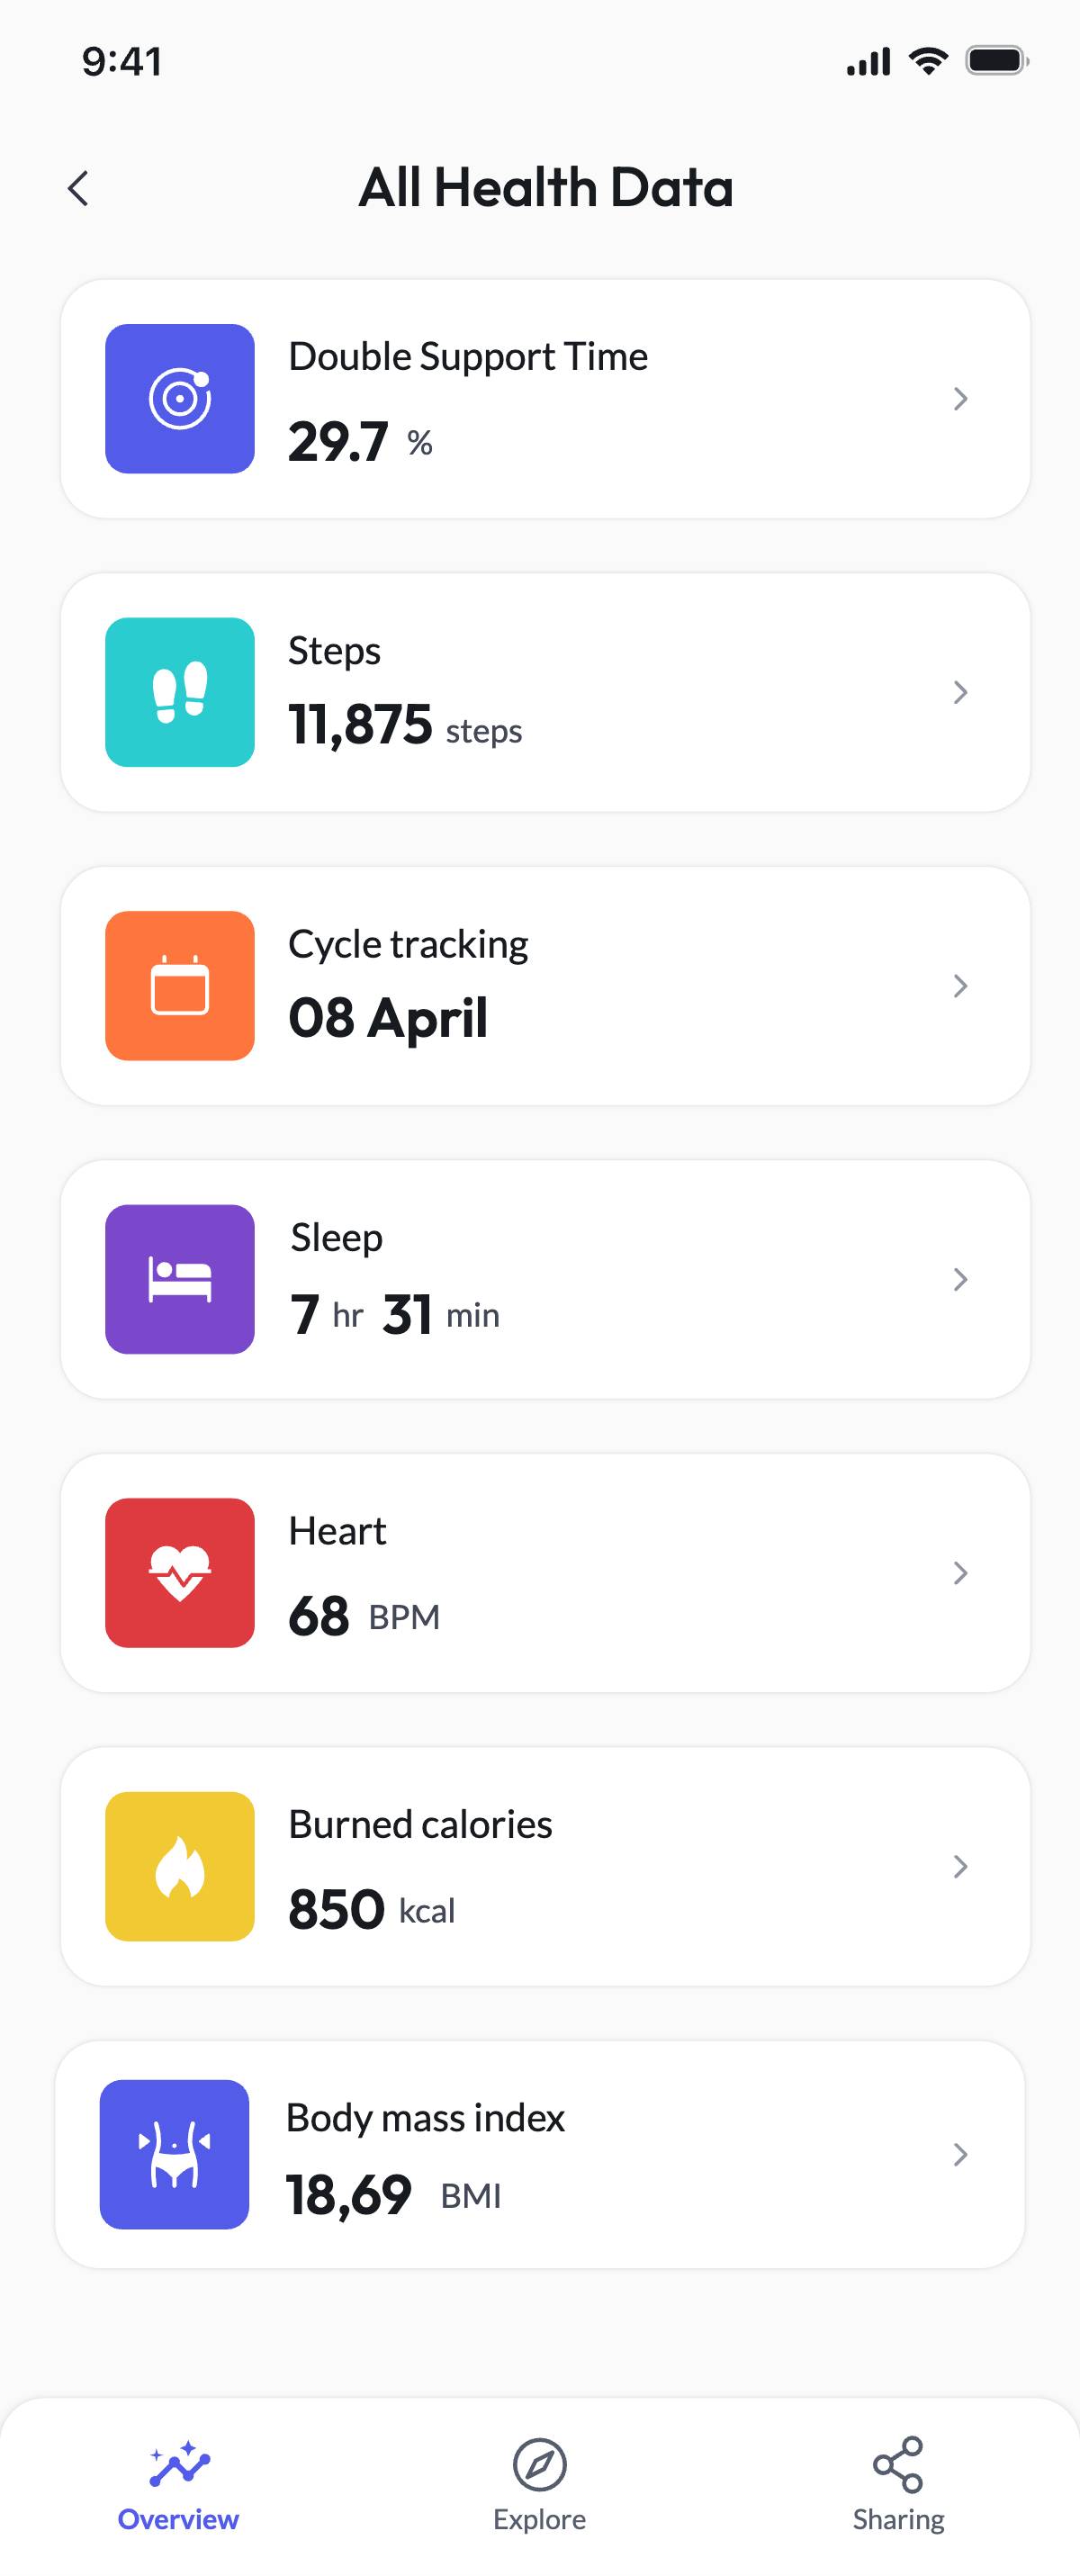 Dashboard - All health data